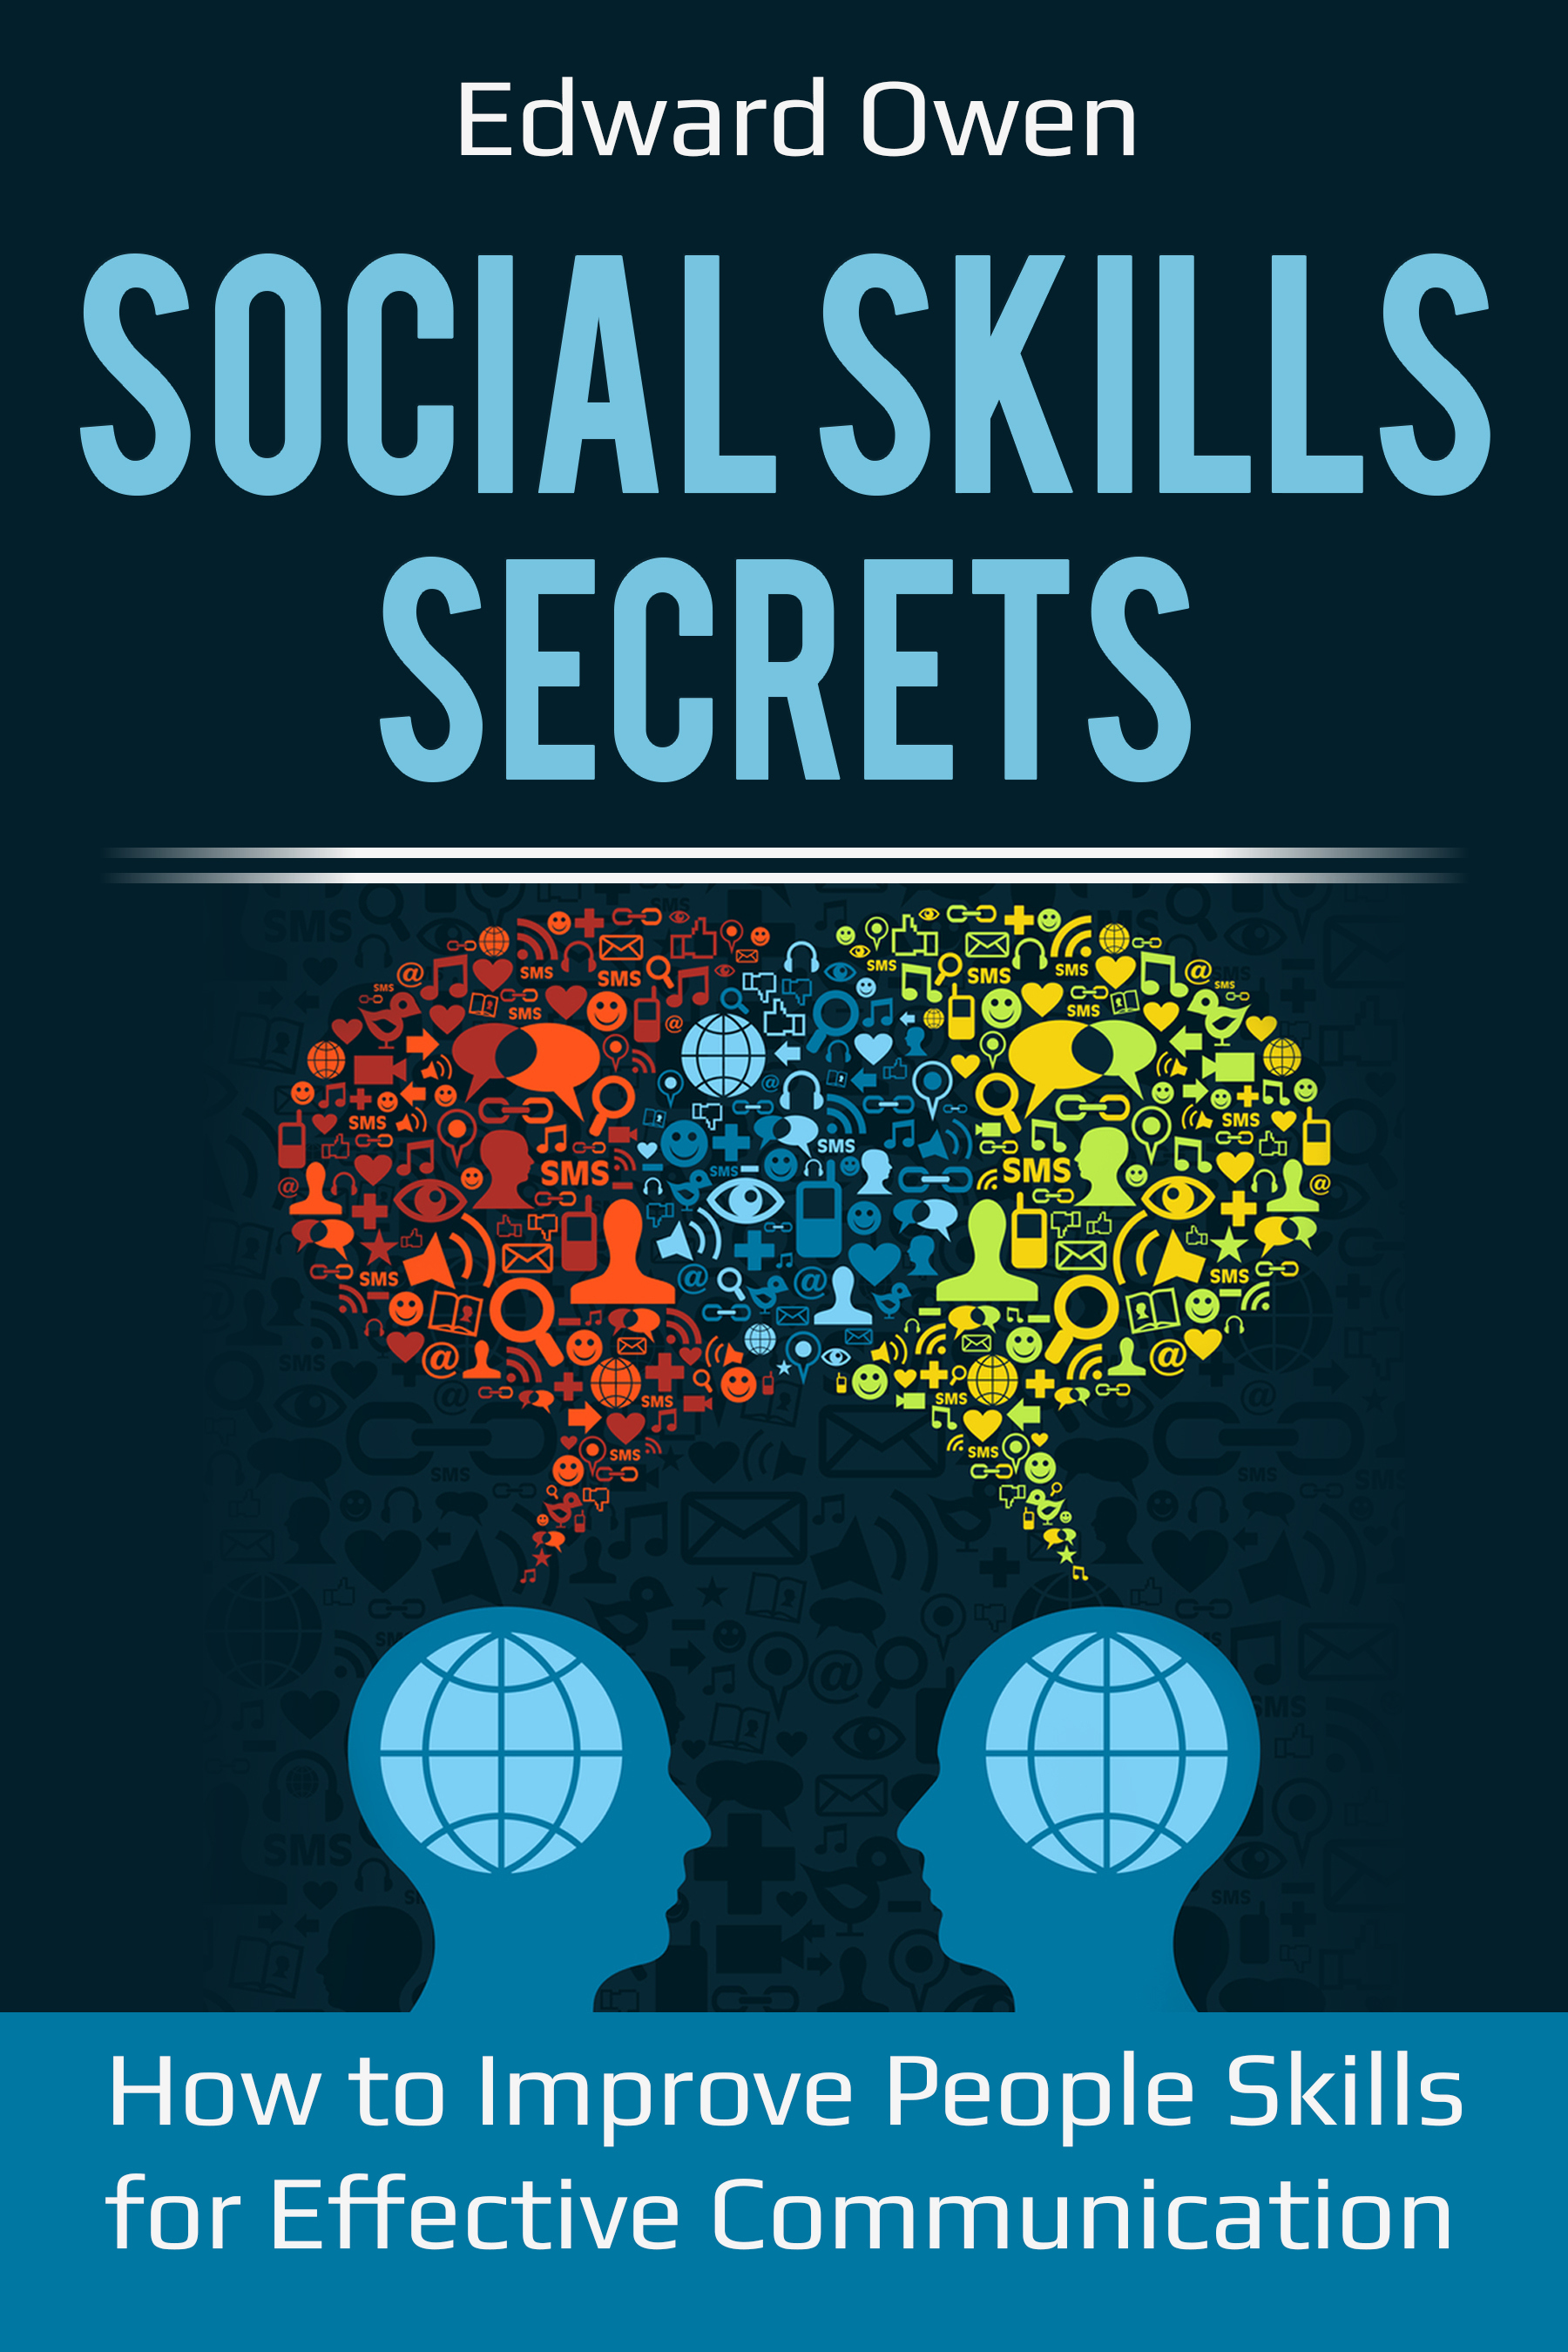 FREE: Social Skills Secrets by Edward Owen